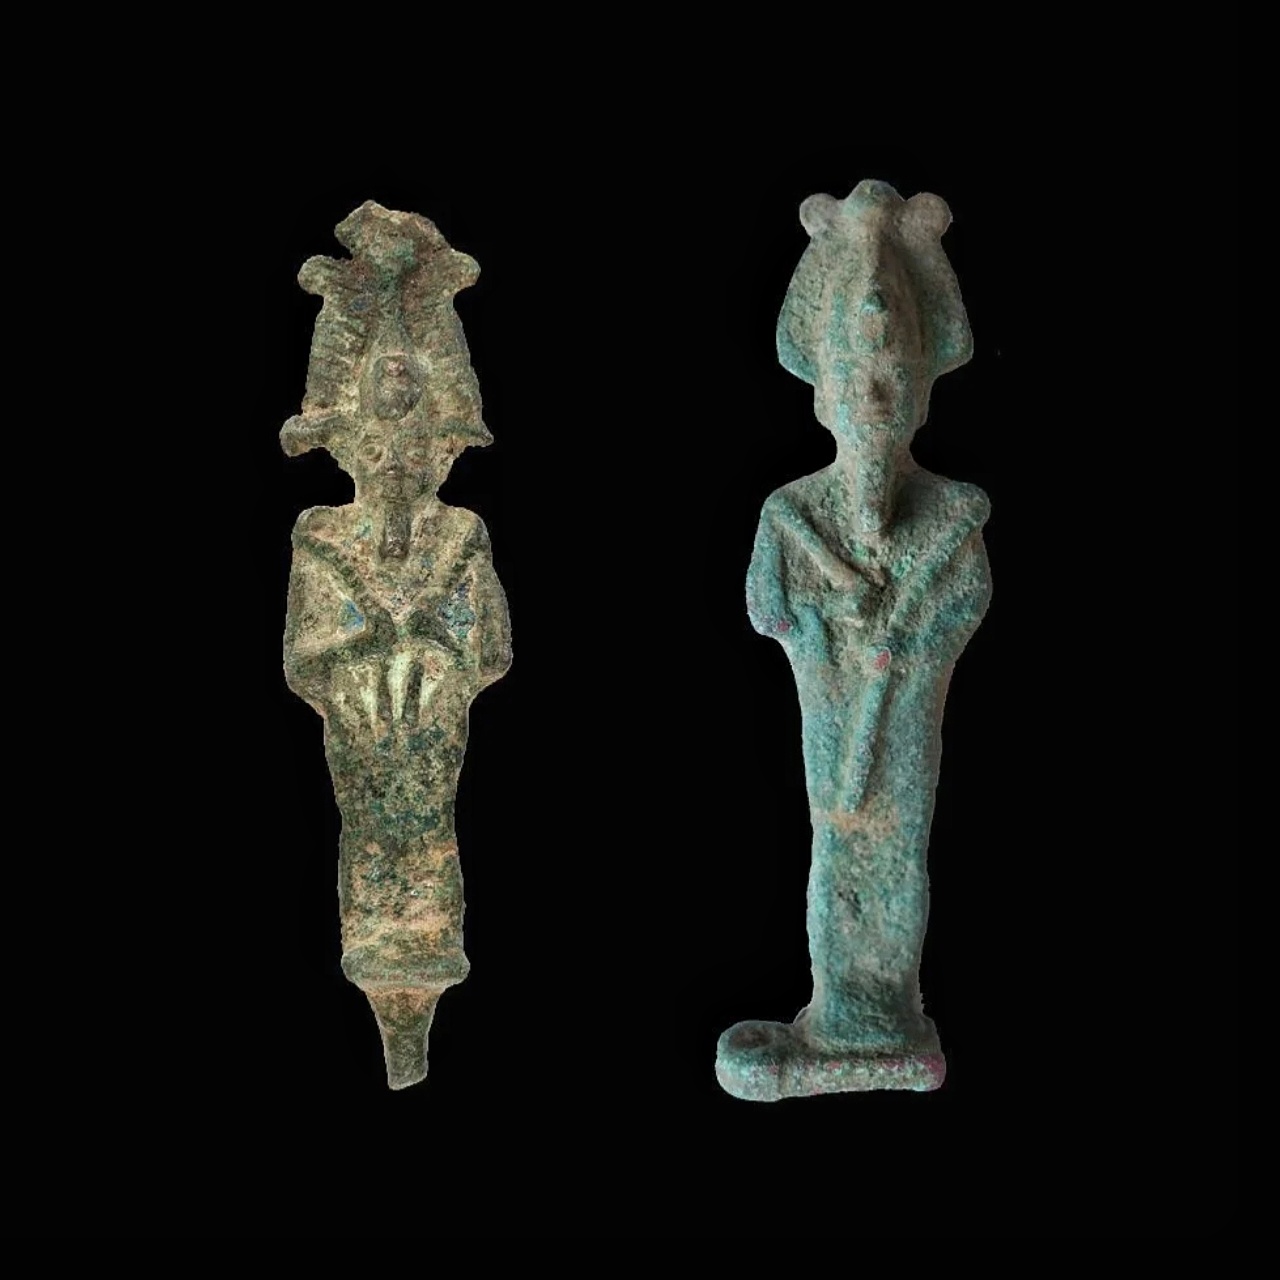 مجسمه های مصر باستان که اوزیریس را به تصویر می کشند در لهستان یافت شده است 1